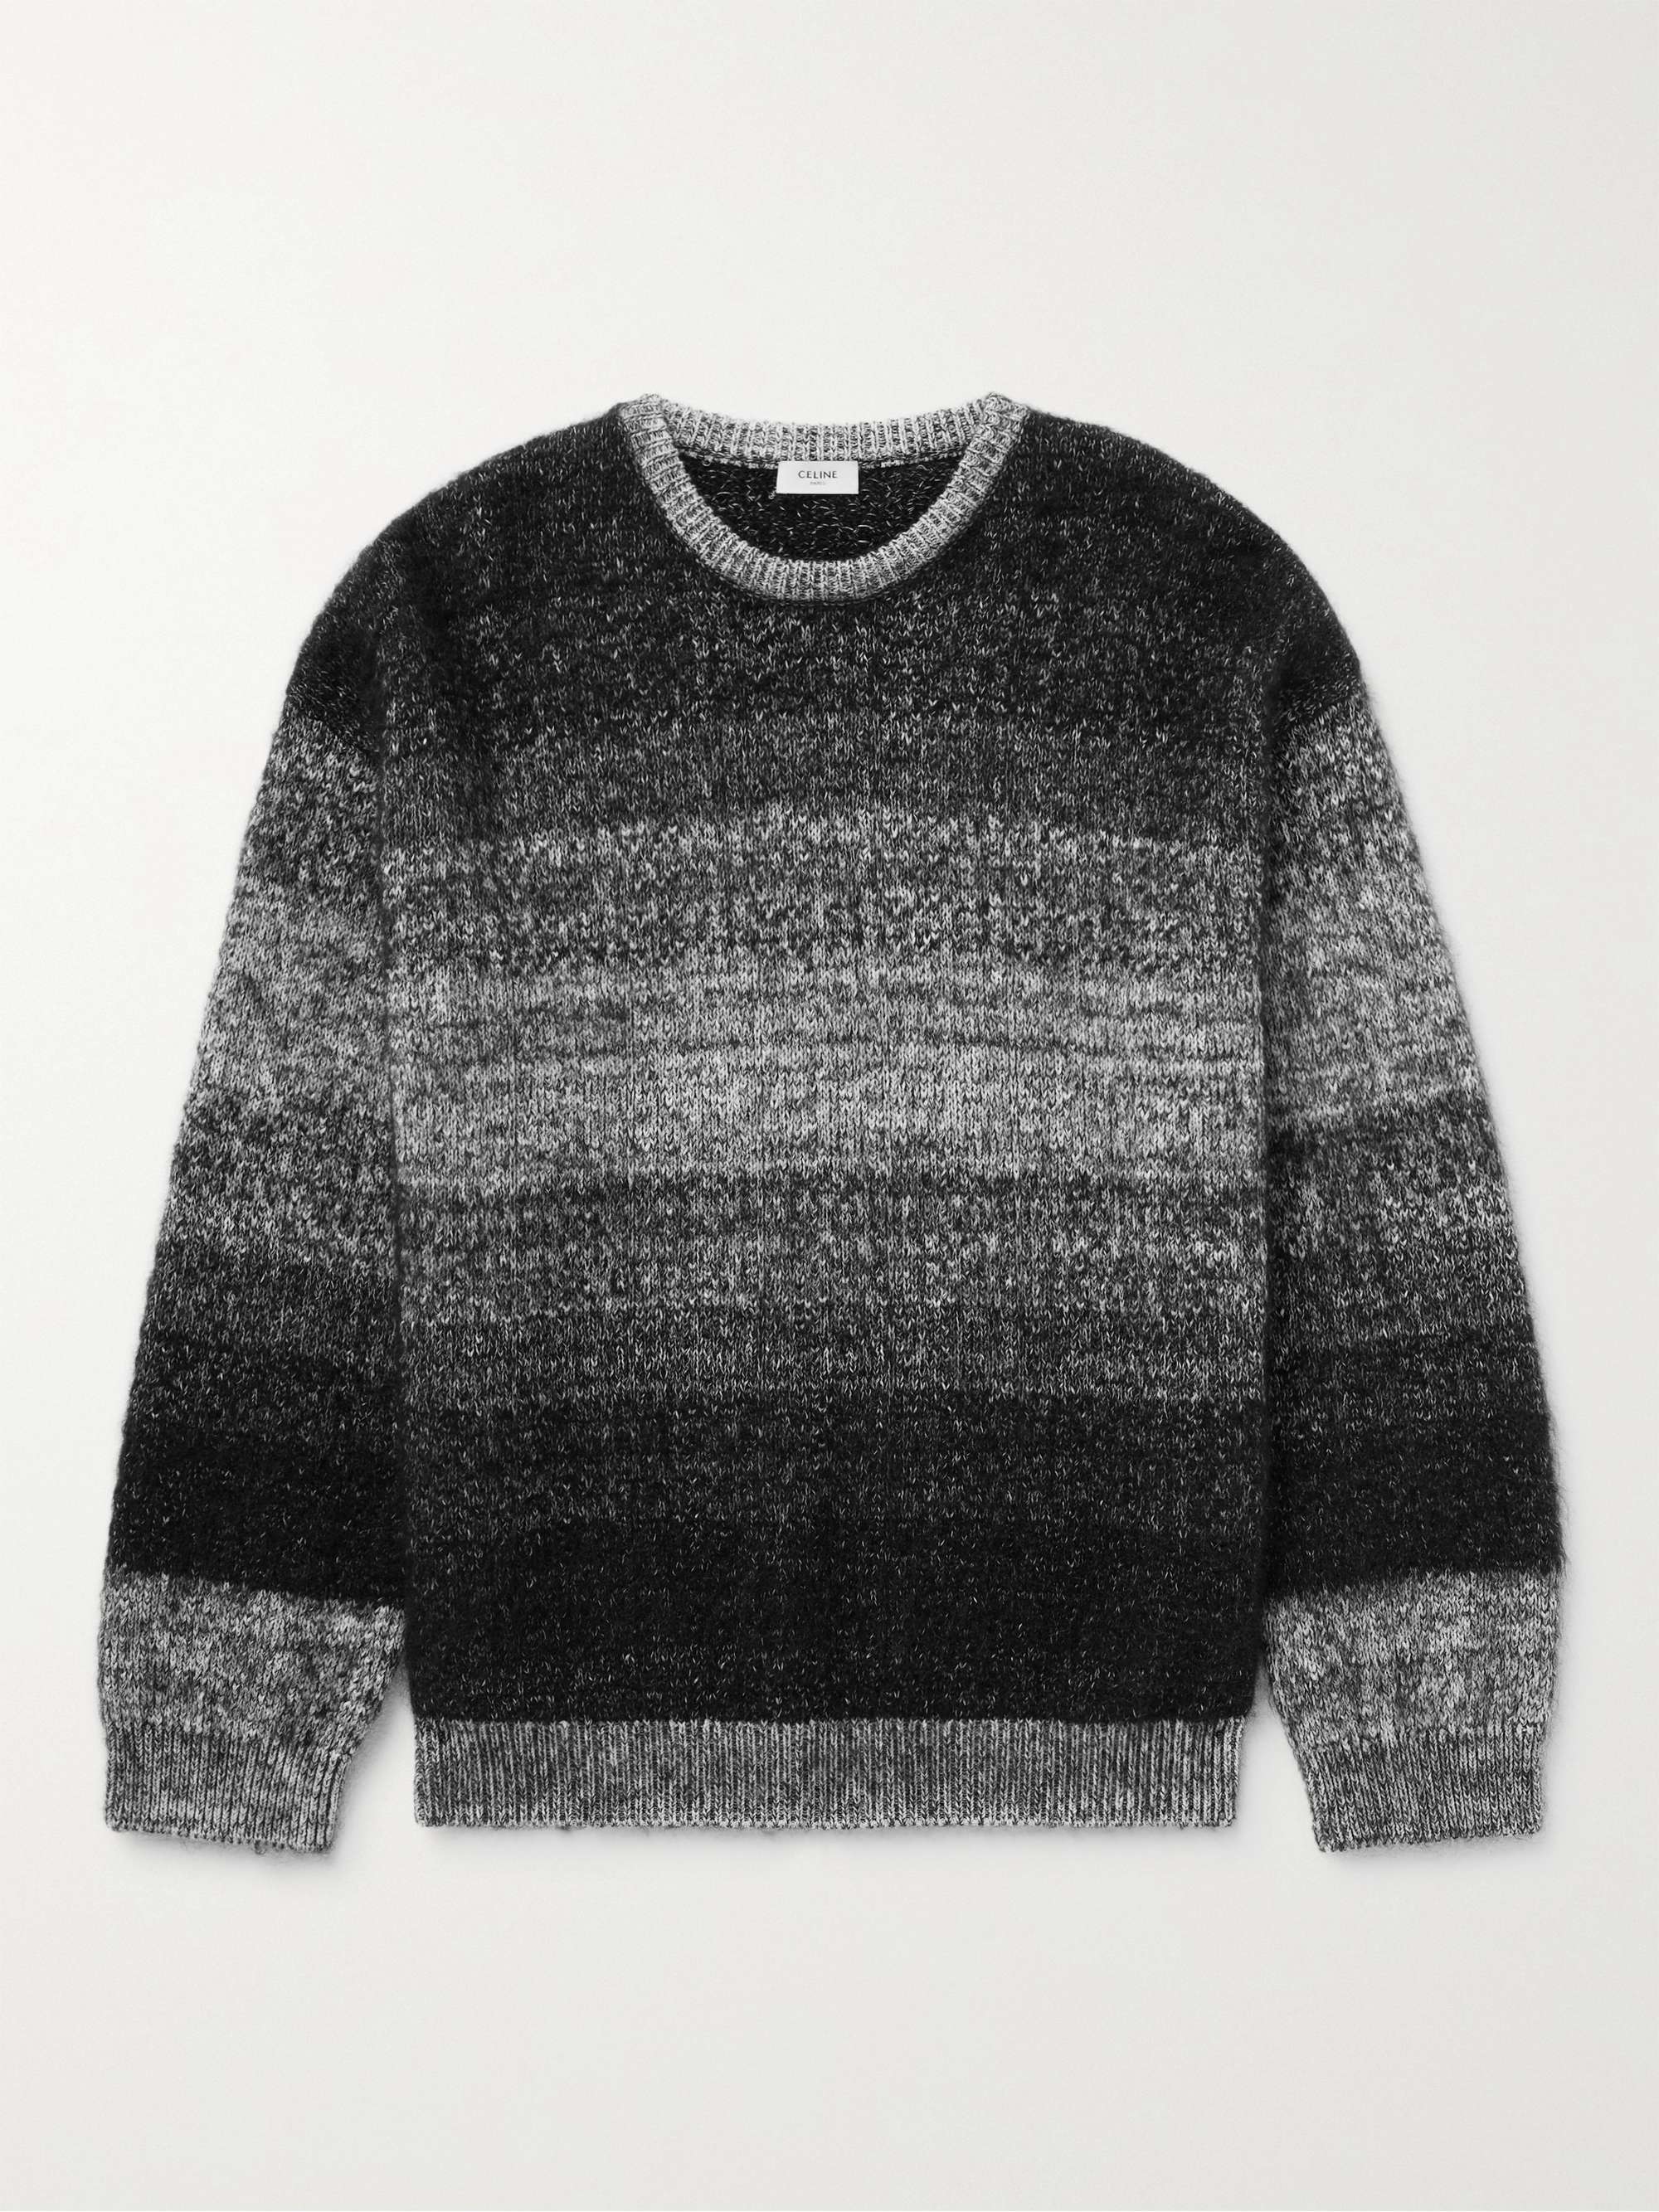 셀린느 옴므 오버사이즈 스트라이프 스웨터 CELINE HOMME Oversized Striped Intarsia Cotton and Mohair-Blend Sweater,Gray